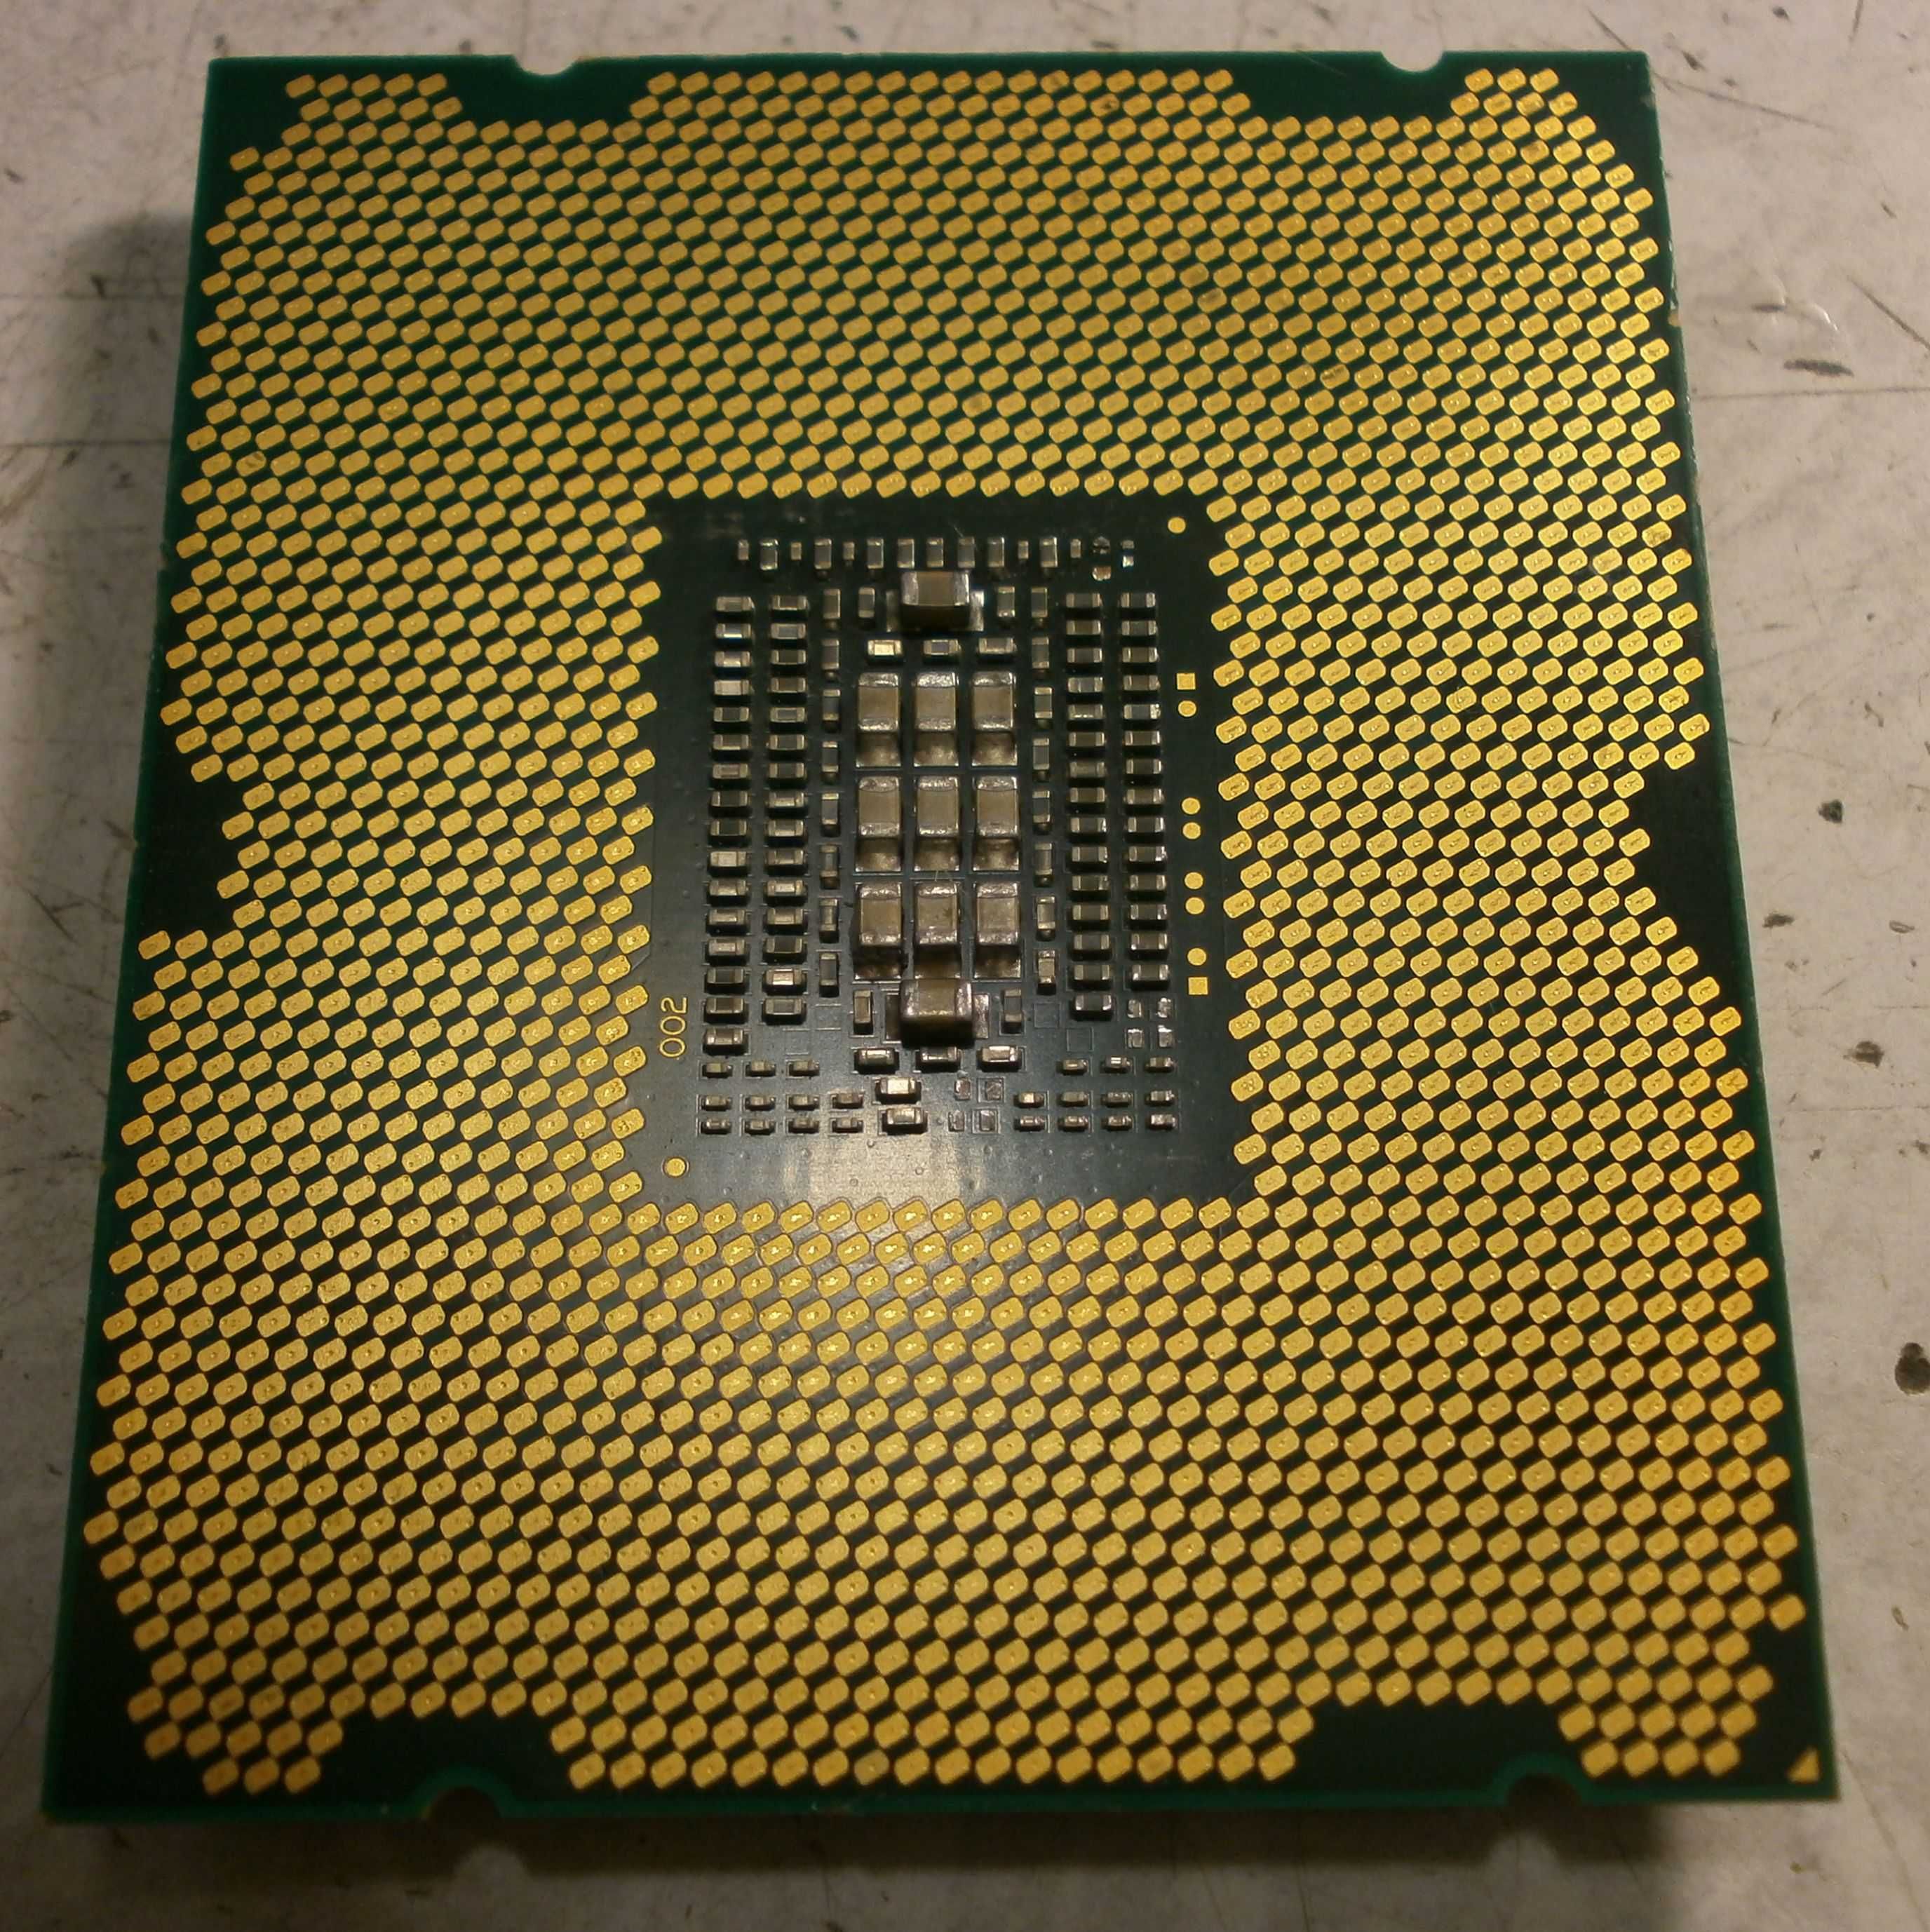 Intel core2 duo e8400/e6550/D925/Хeon E5 2665 s2011/ Кулер 775